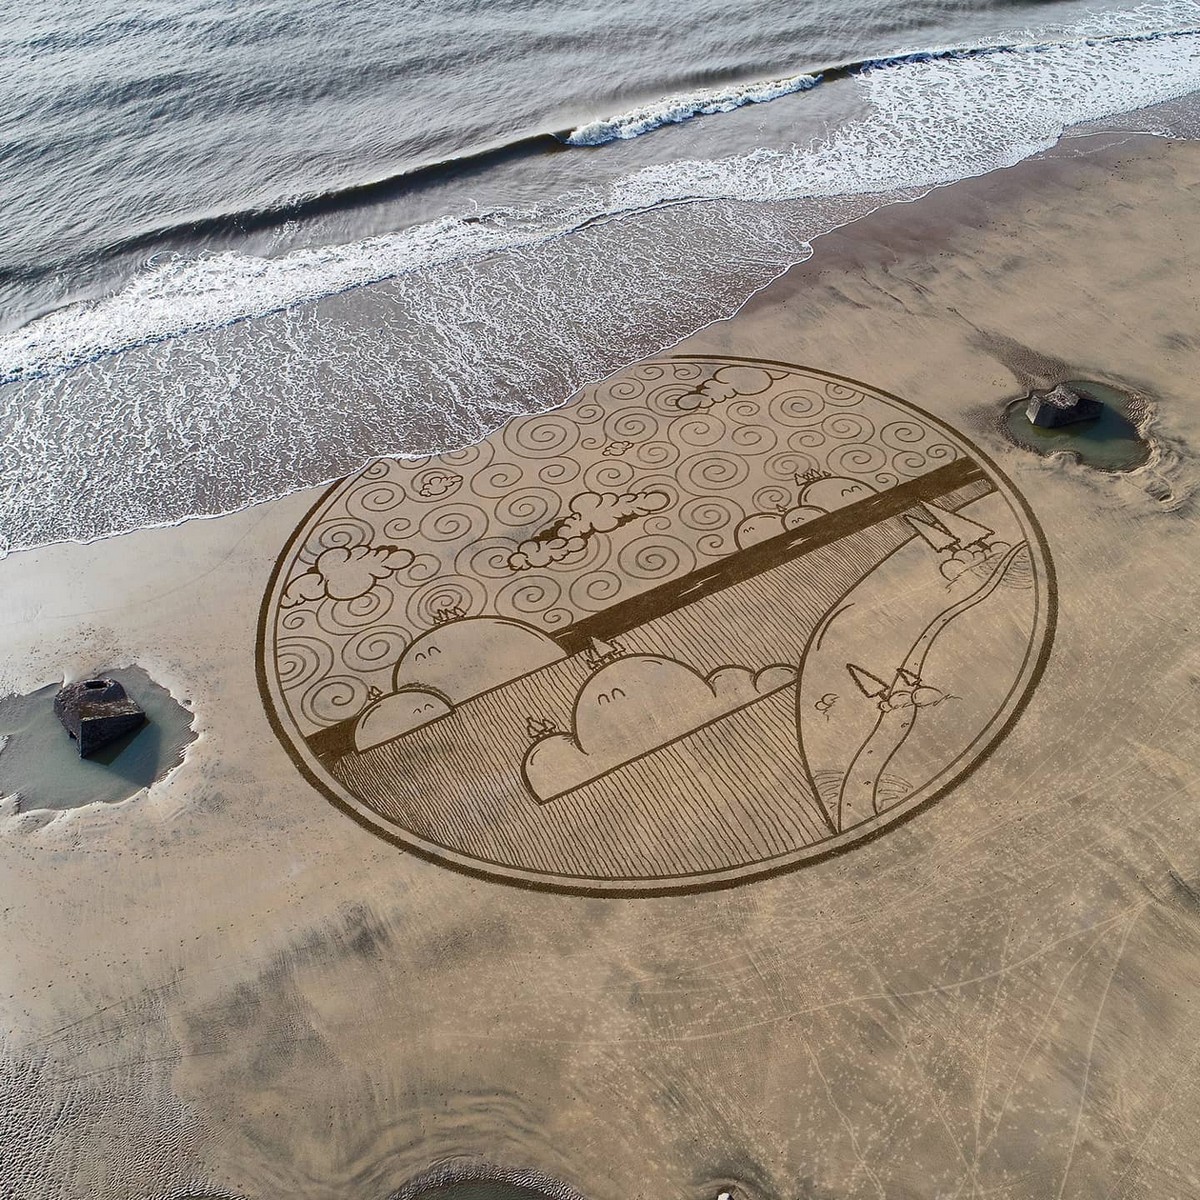 Художник создает гигантские рисунки на пляжном песке